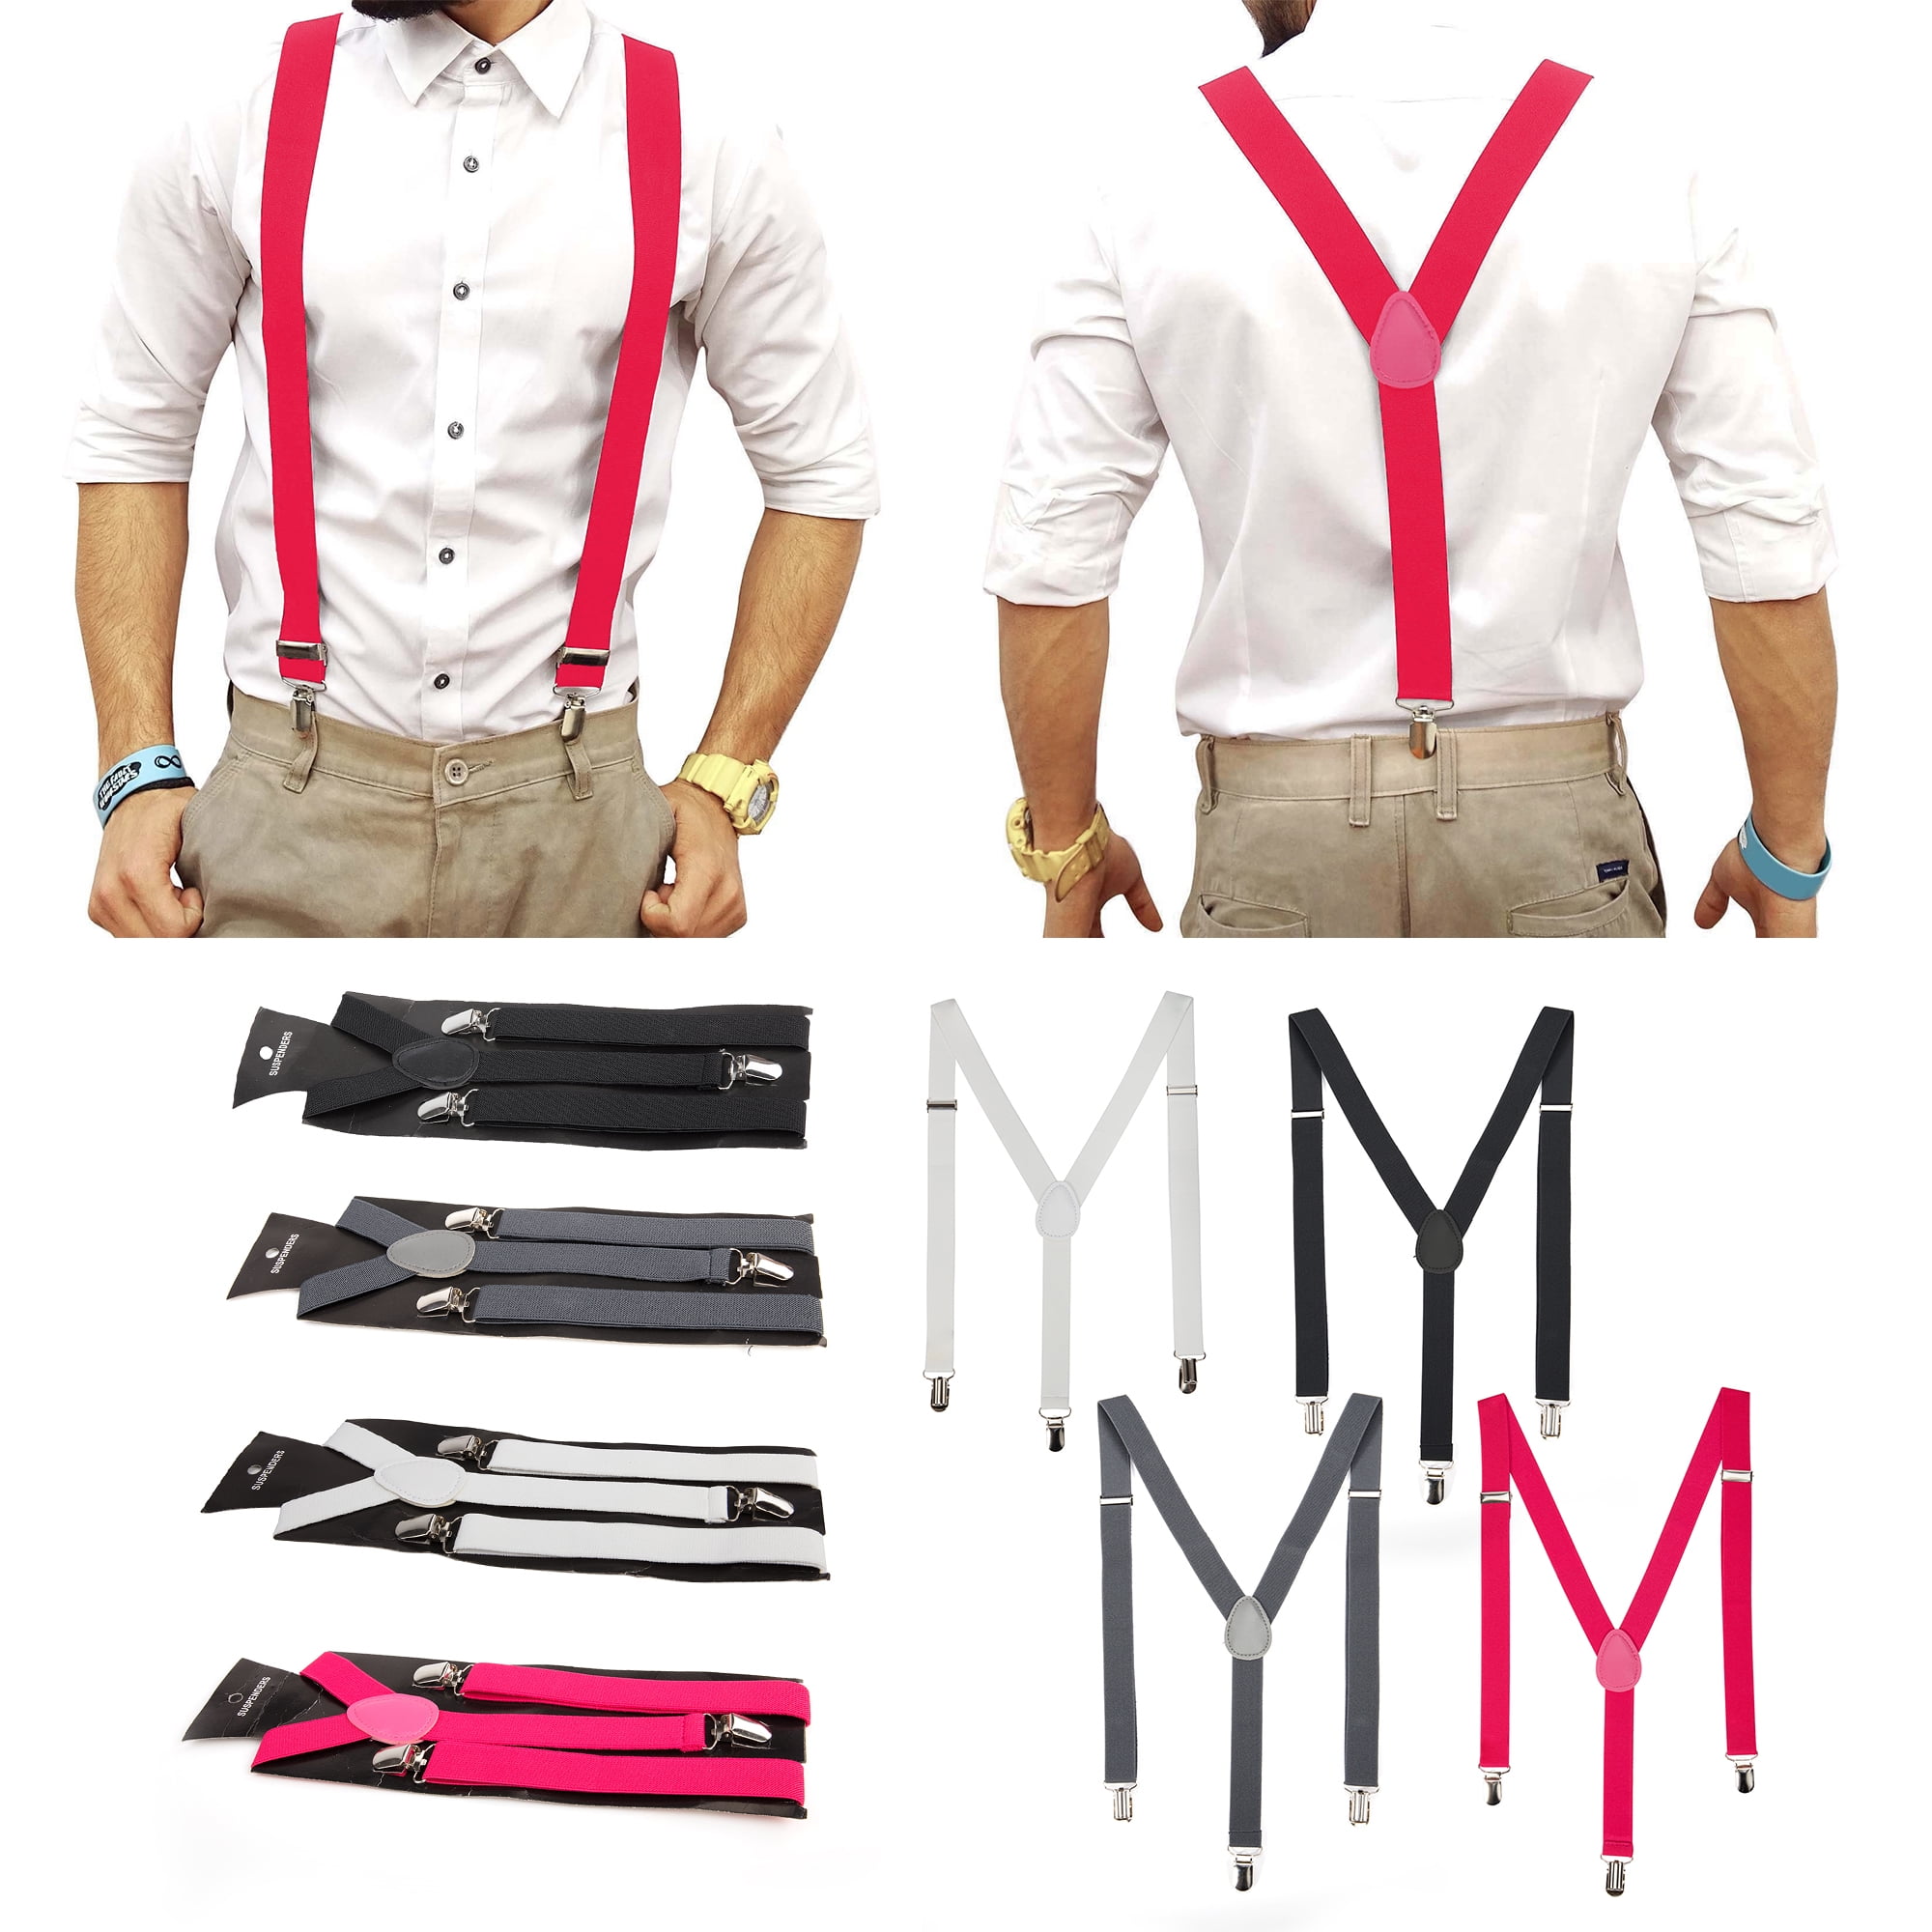 AWAYTR Mens Brown Button End Suspenders - Adjustable Elastic Y Shape Tuxedo  Suspender